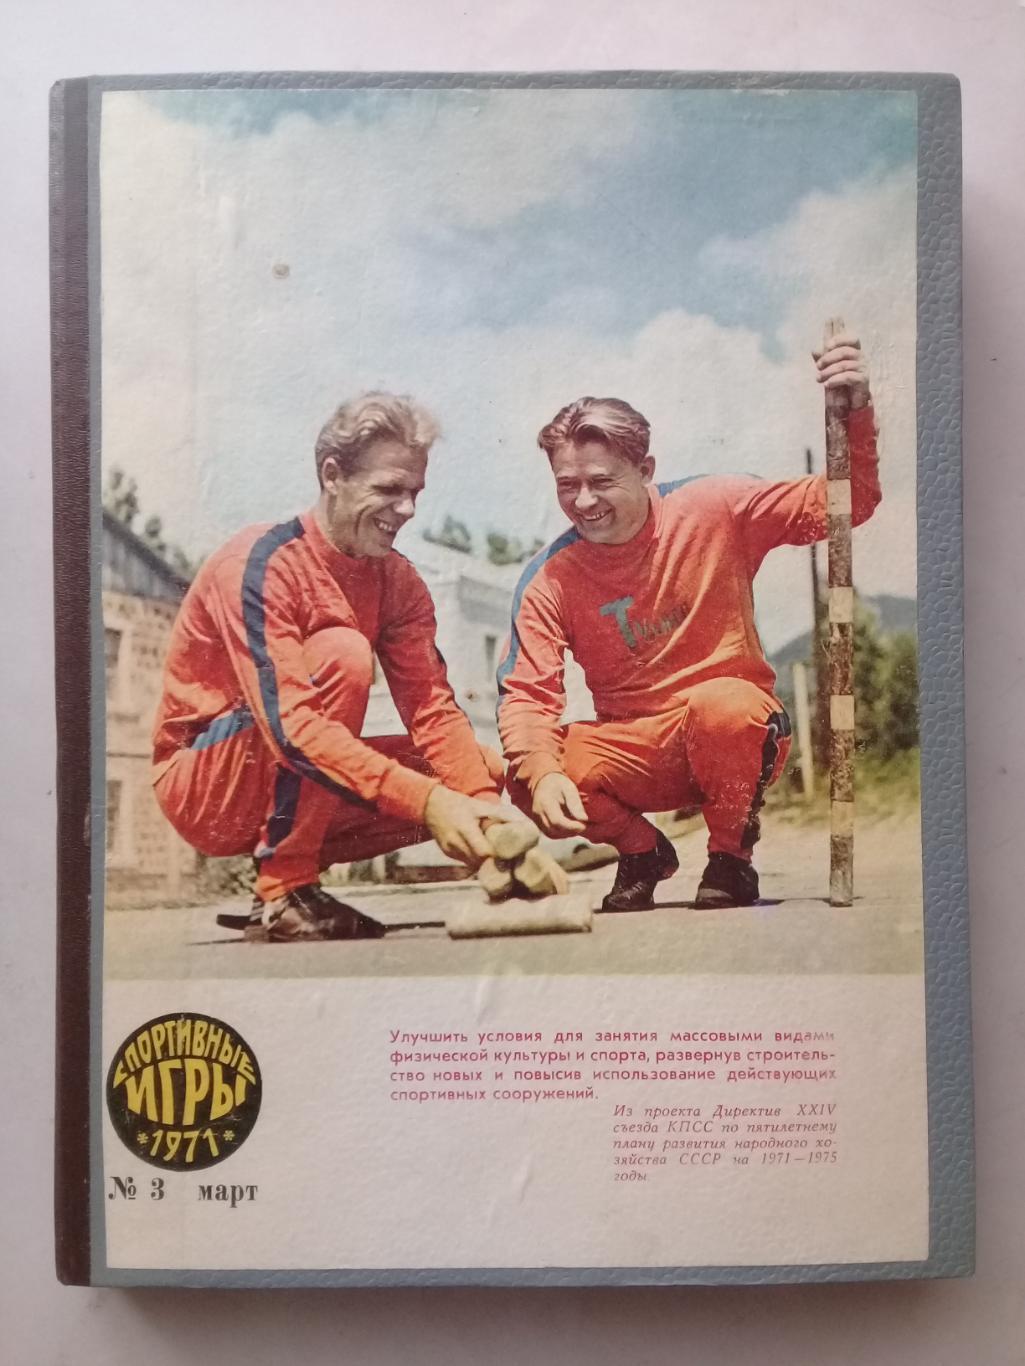 (Только для dk7586) Журнал Спортивные игры 1971 год. Годовой комплект.